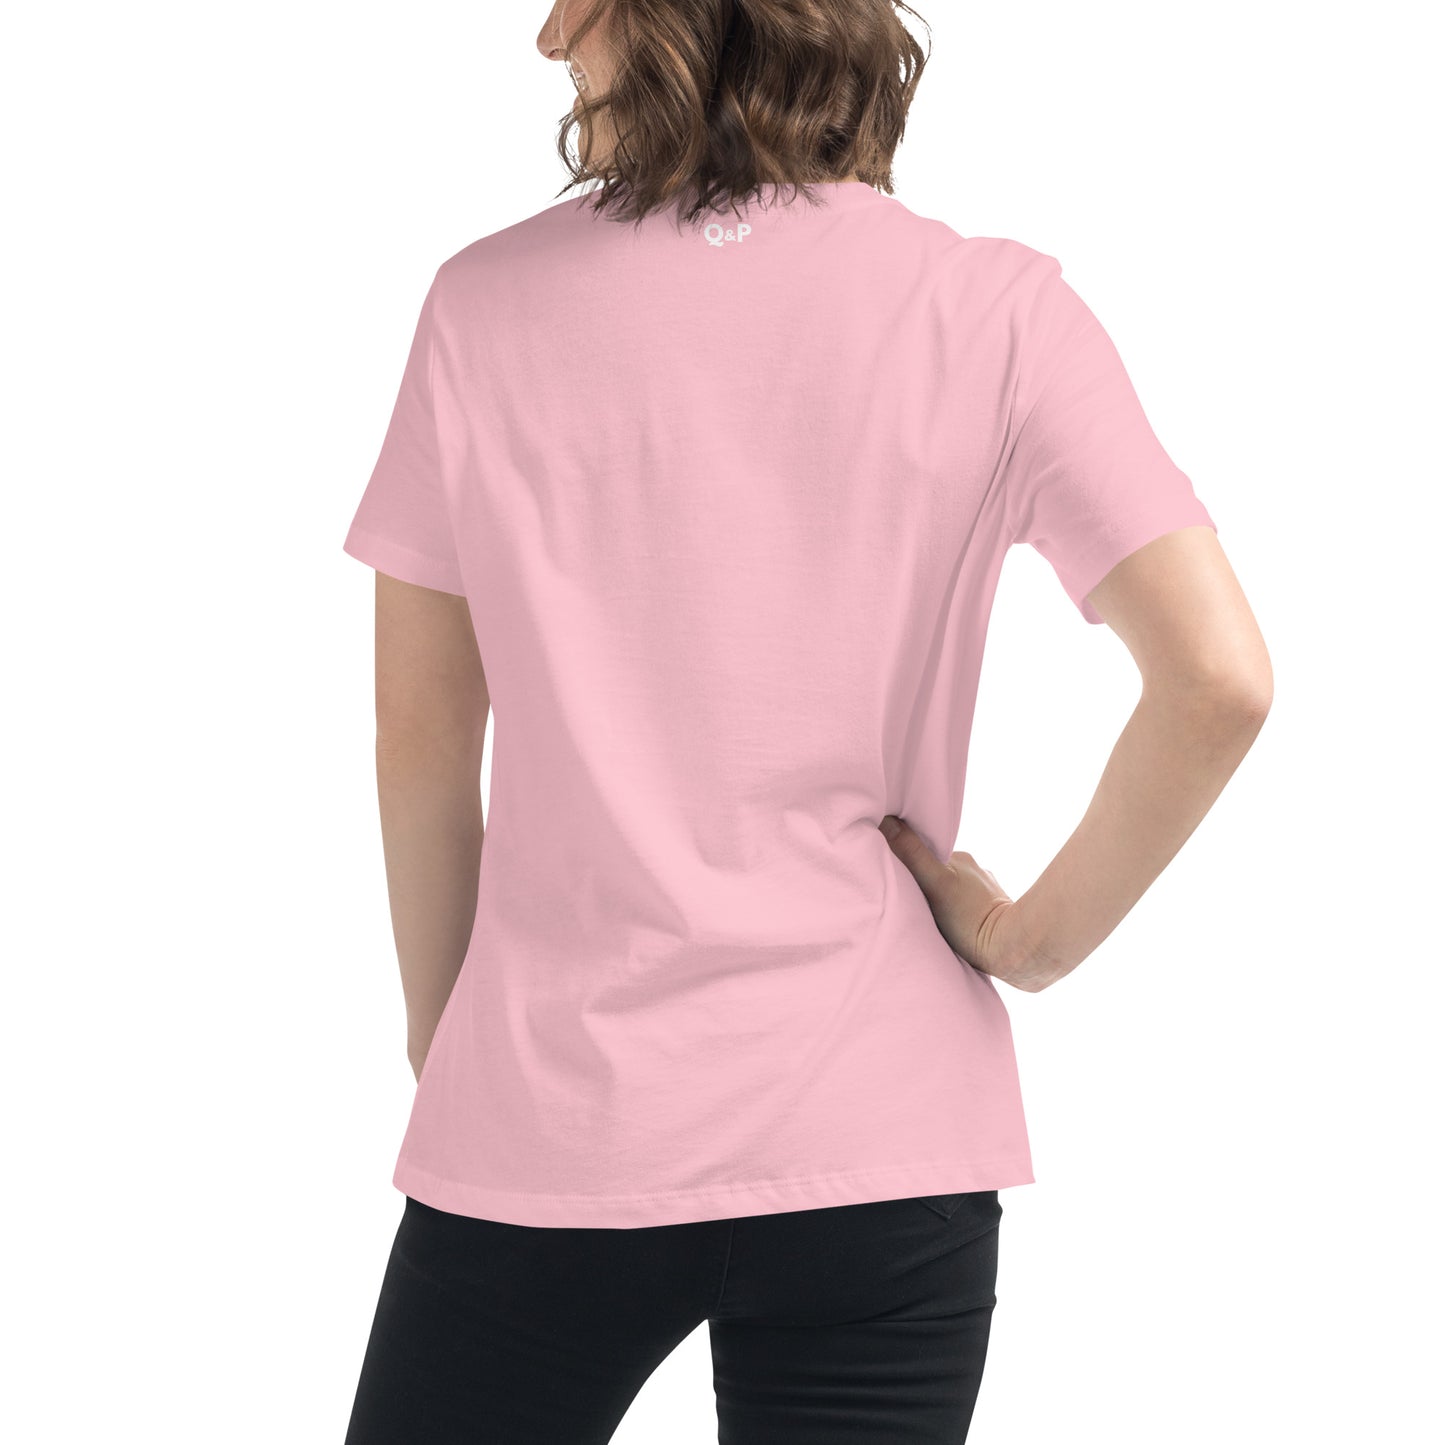 Gaudete - Advent Women's Relaxed T-Shirt